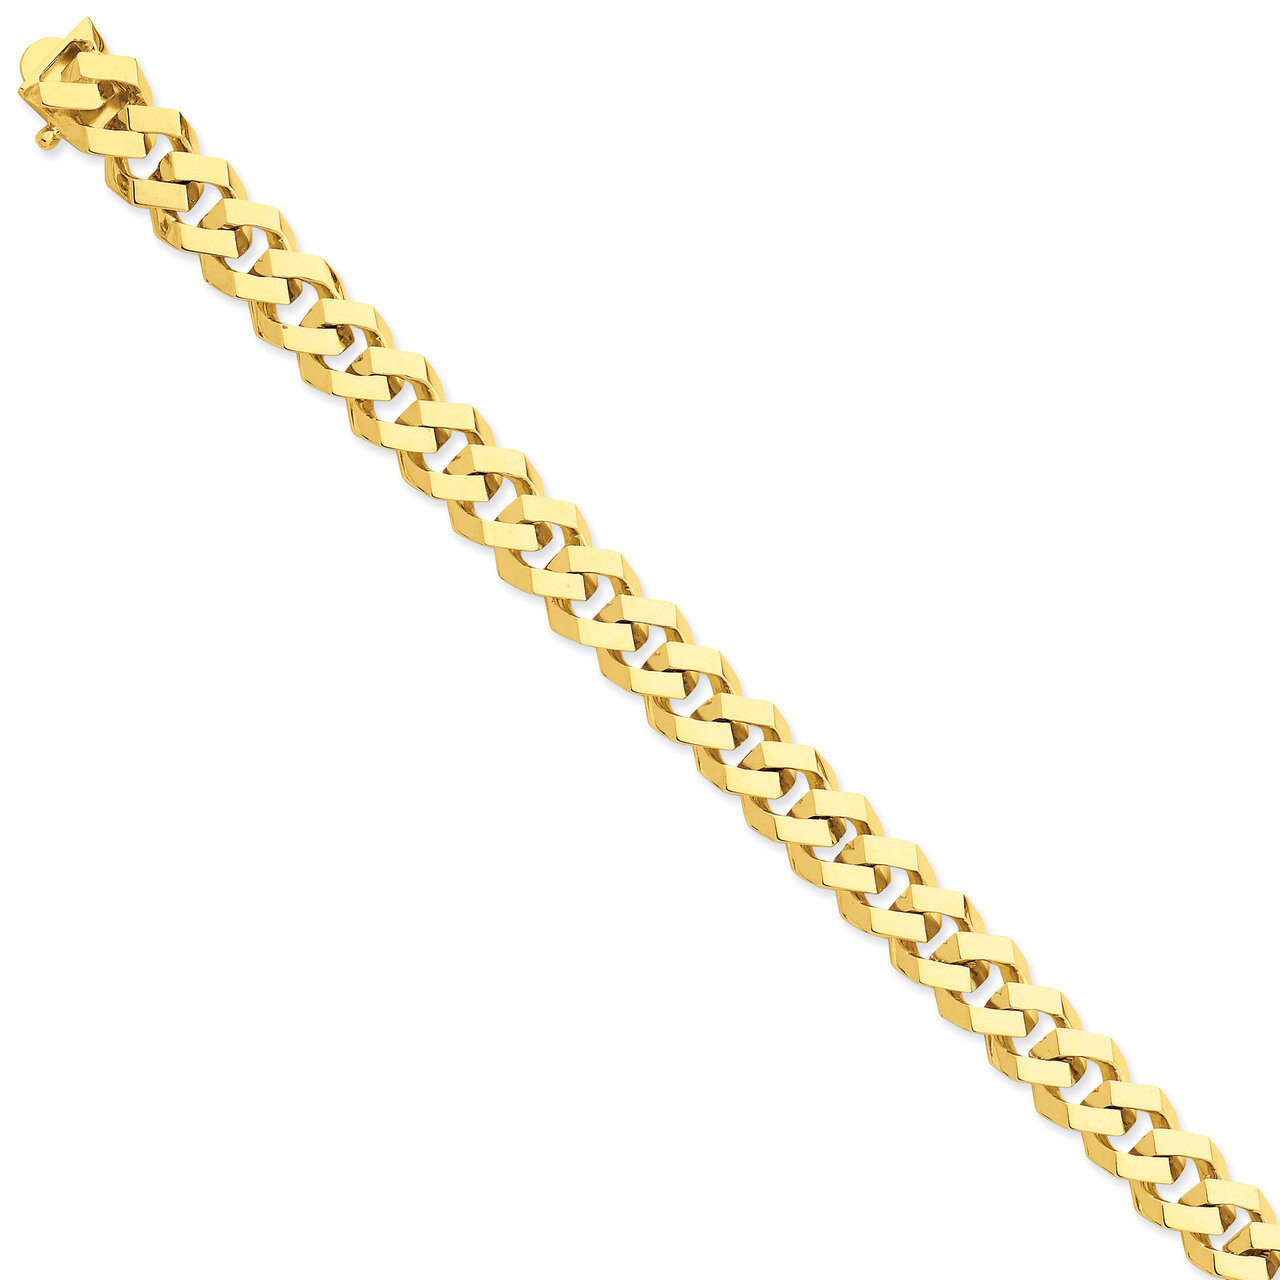 10mm Hand-polished Link Necklace 20 Inch 14k Gold LK158-20